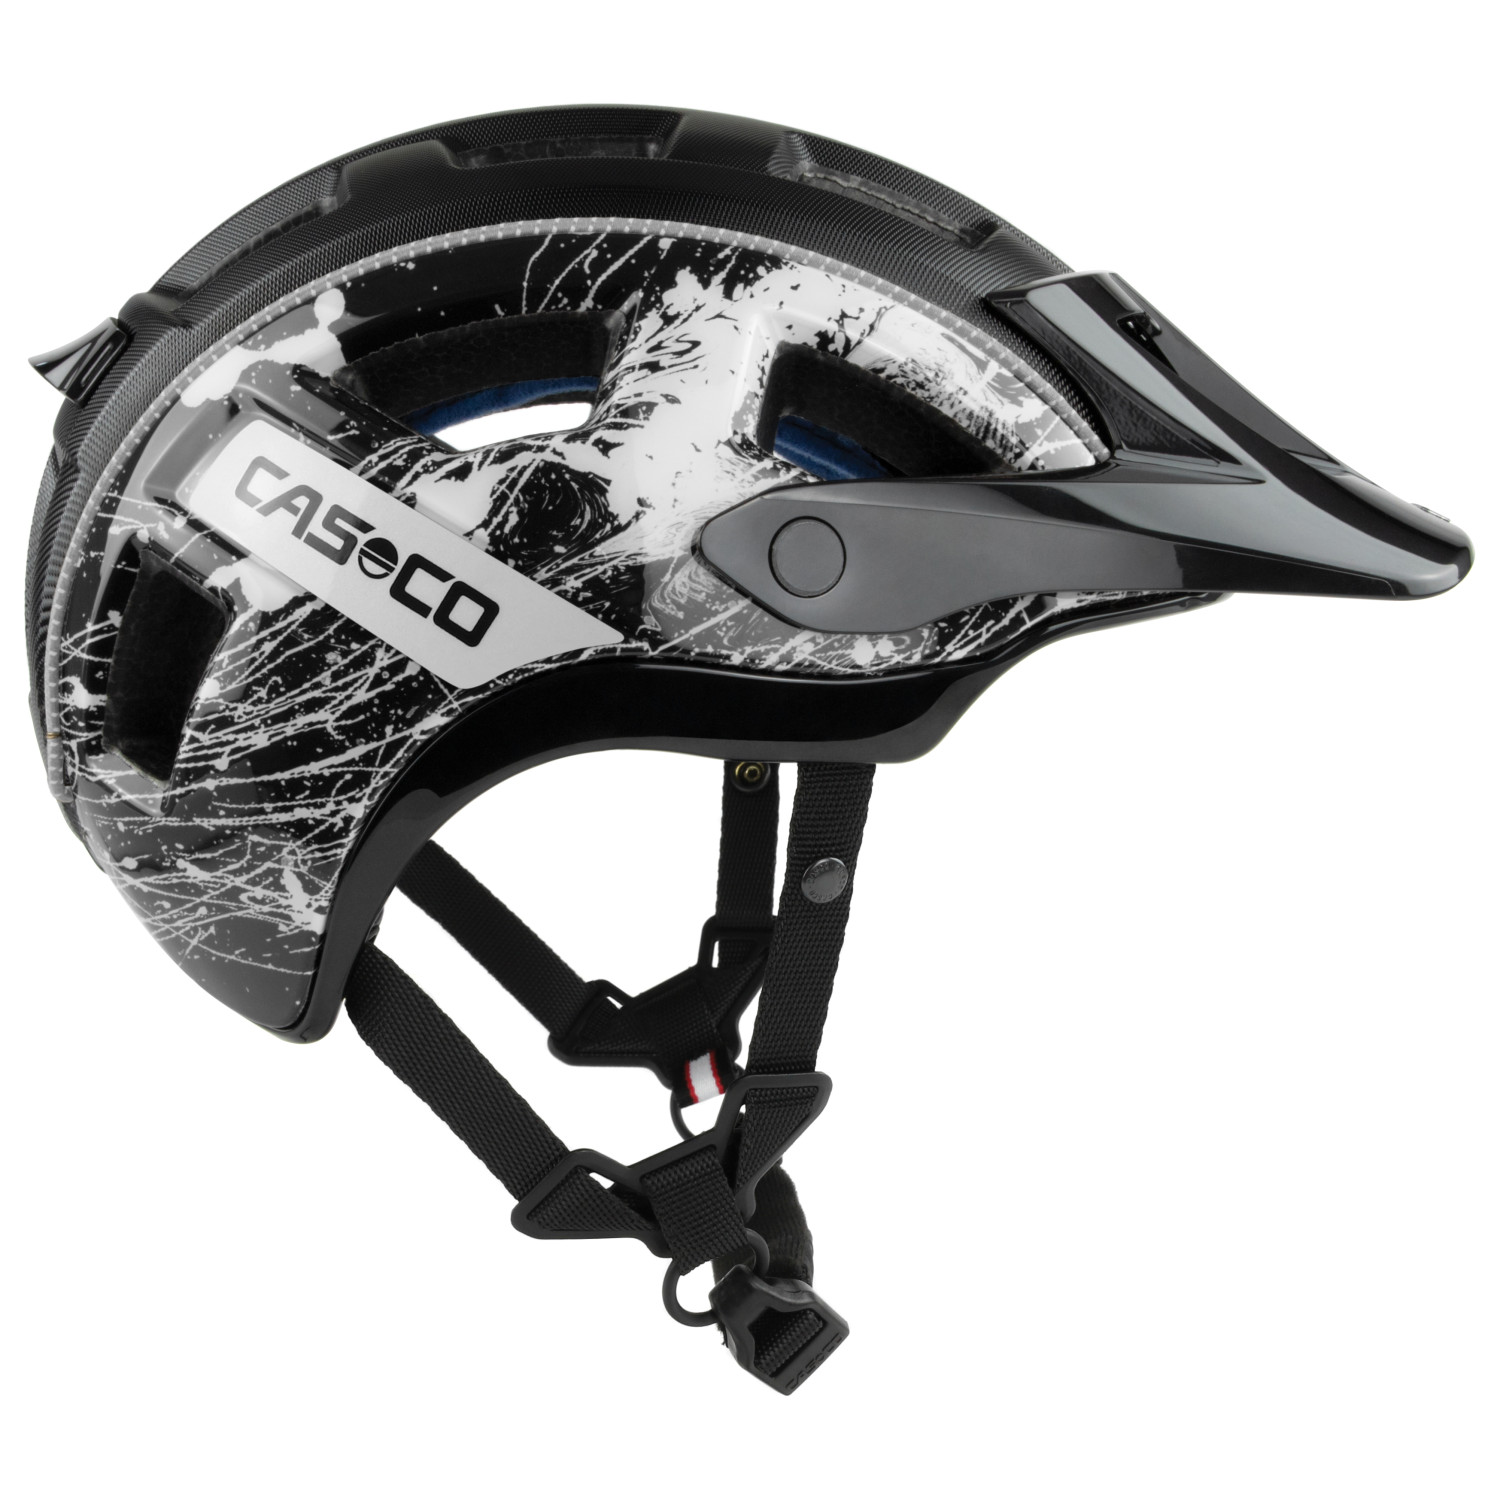 Велосипедный шлем Casco MTBE 2, цвет Splatter White/Black